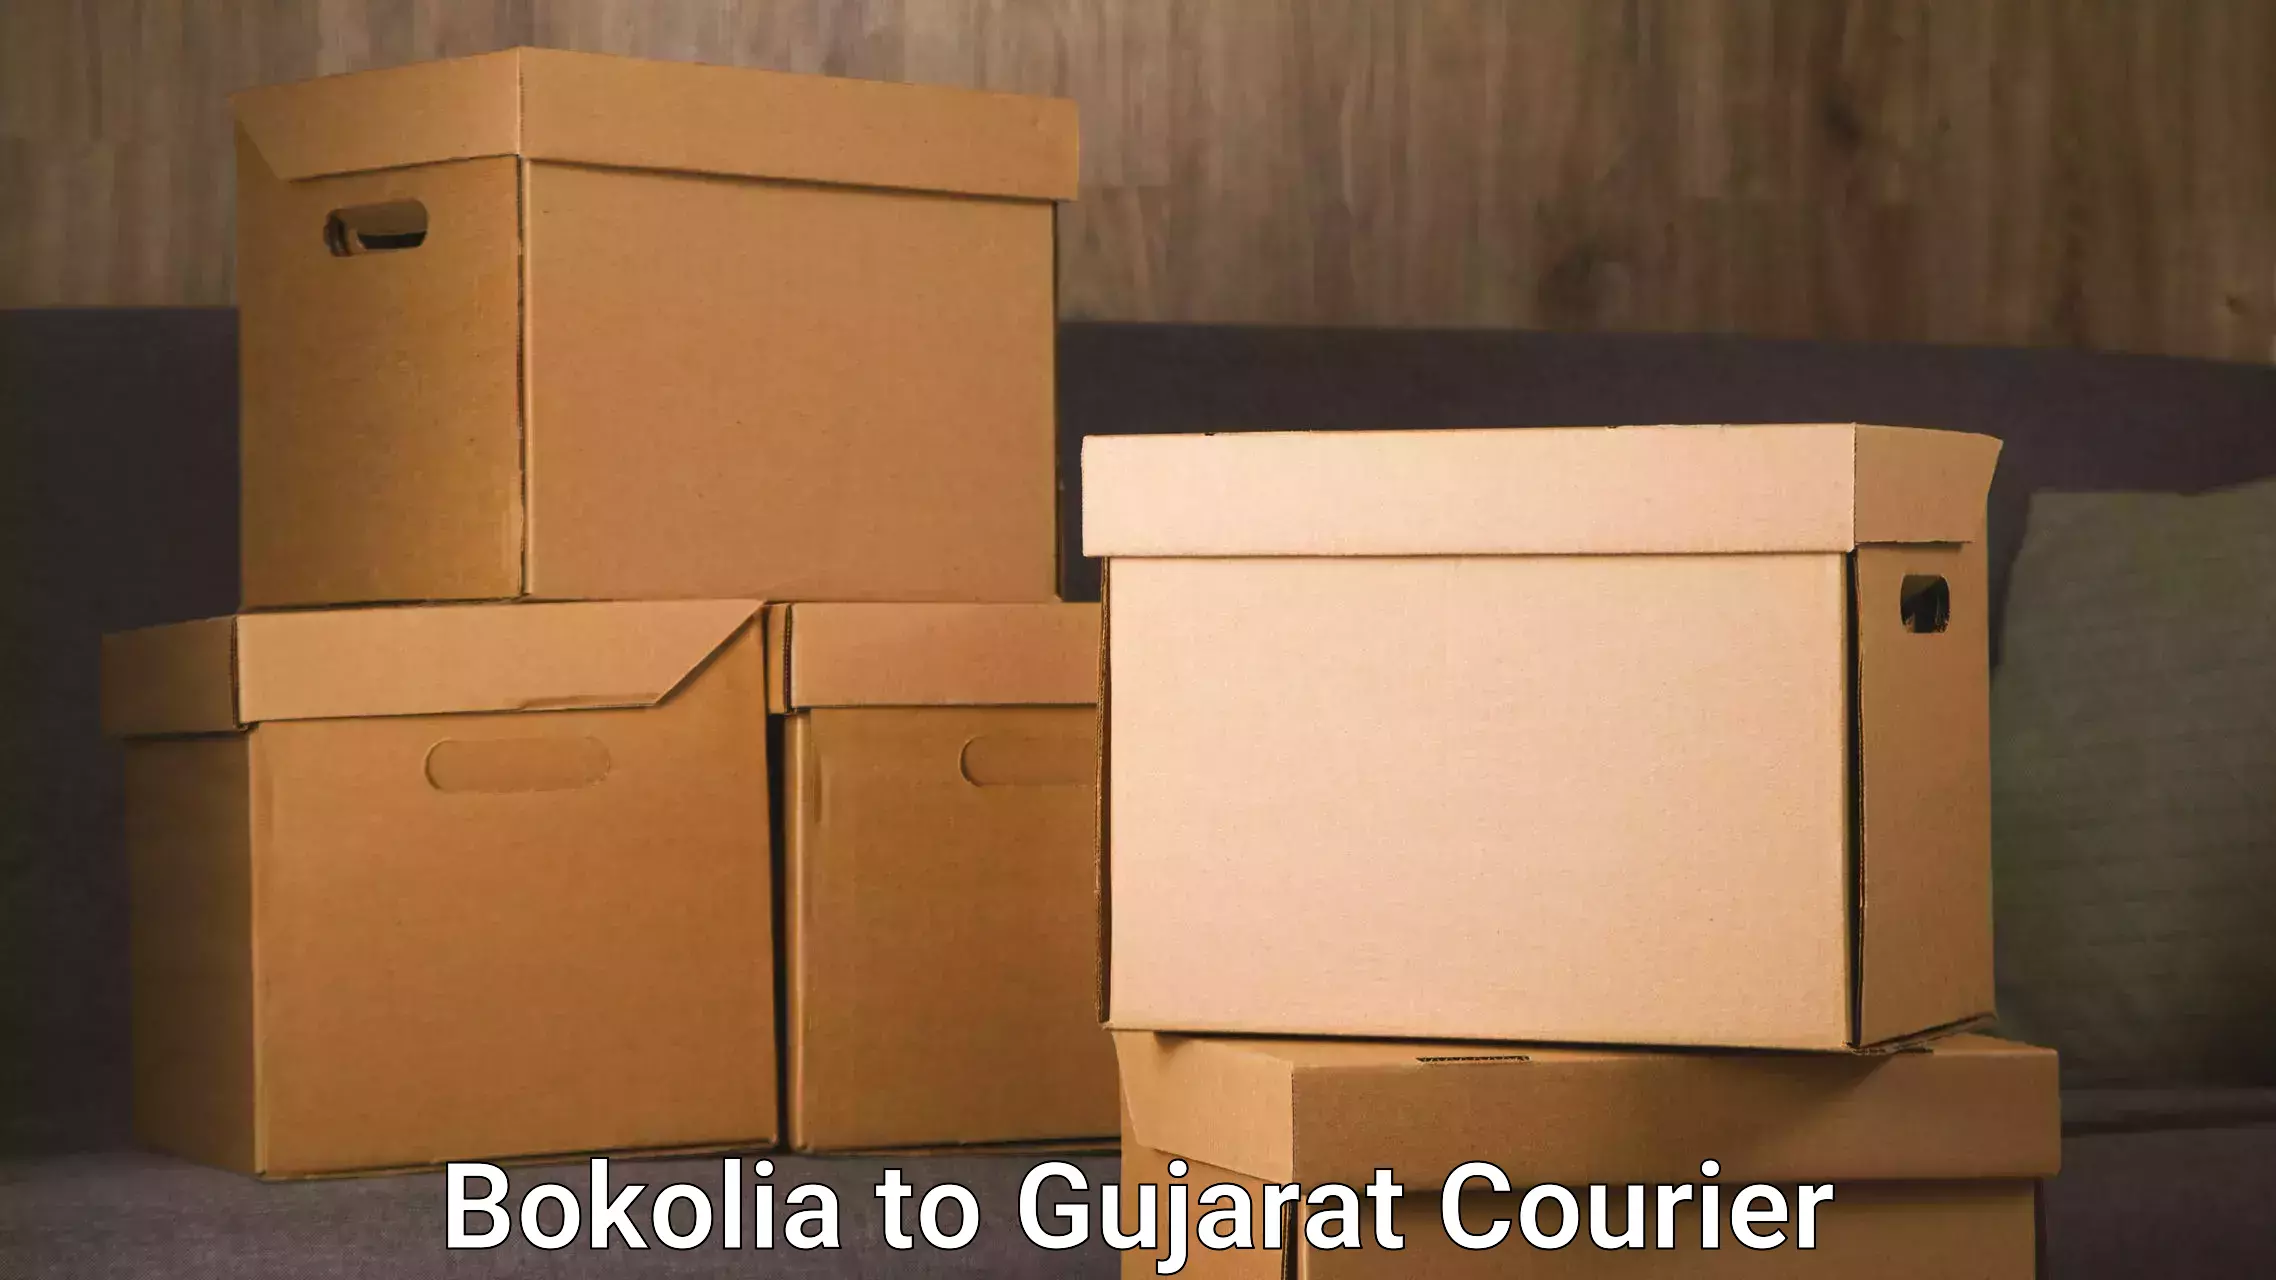 Urgent courier needs Bokolia to Kandla Port